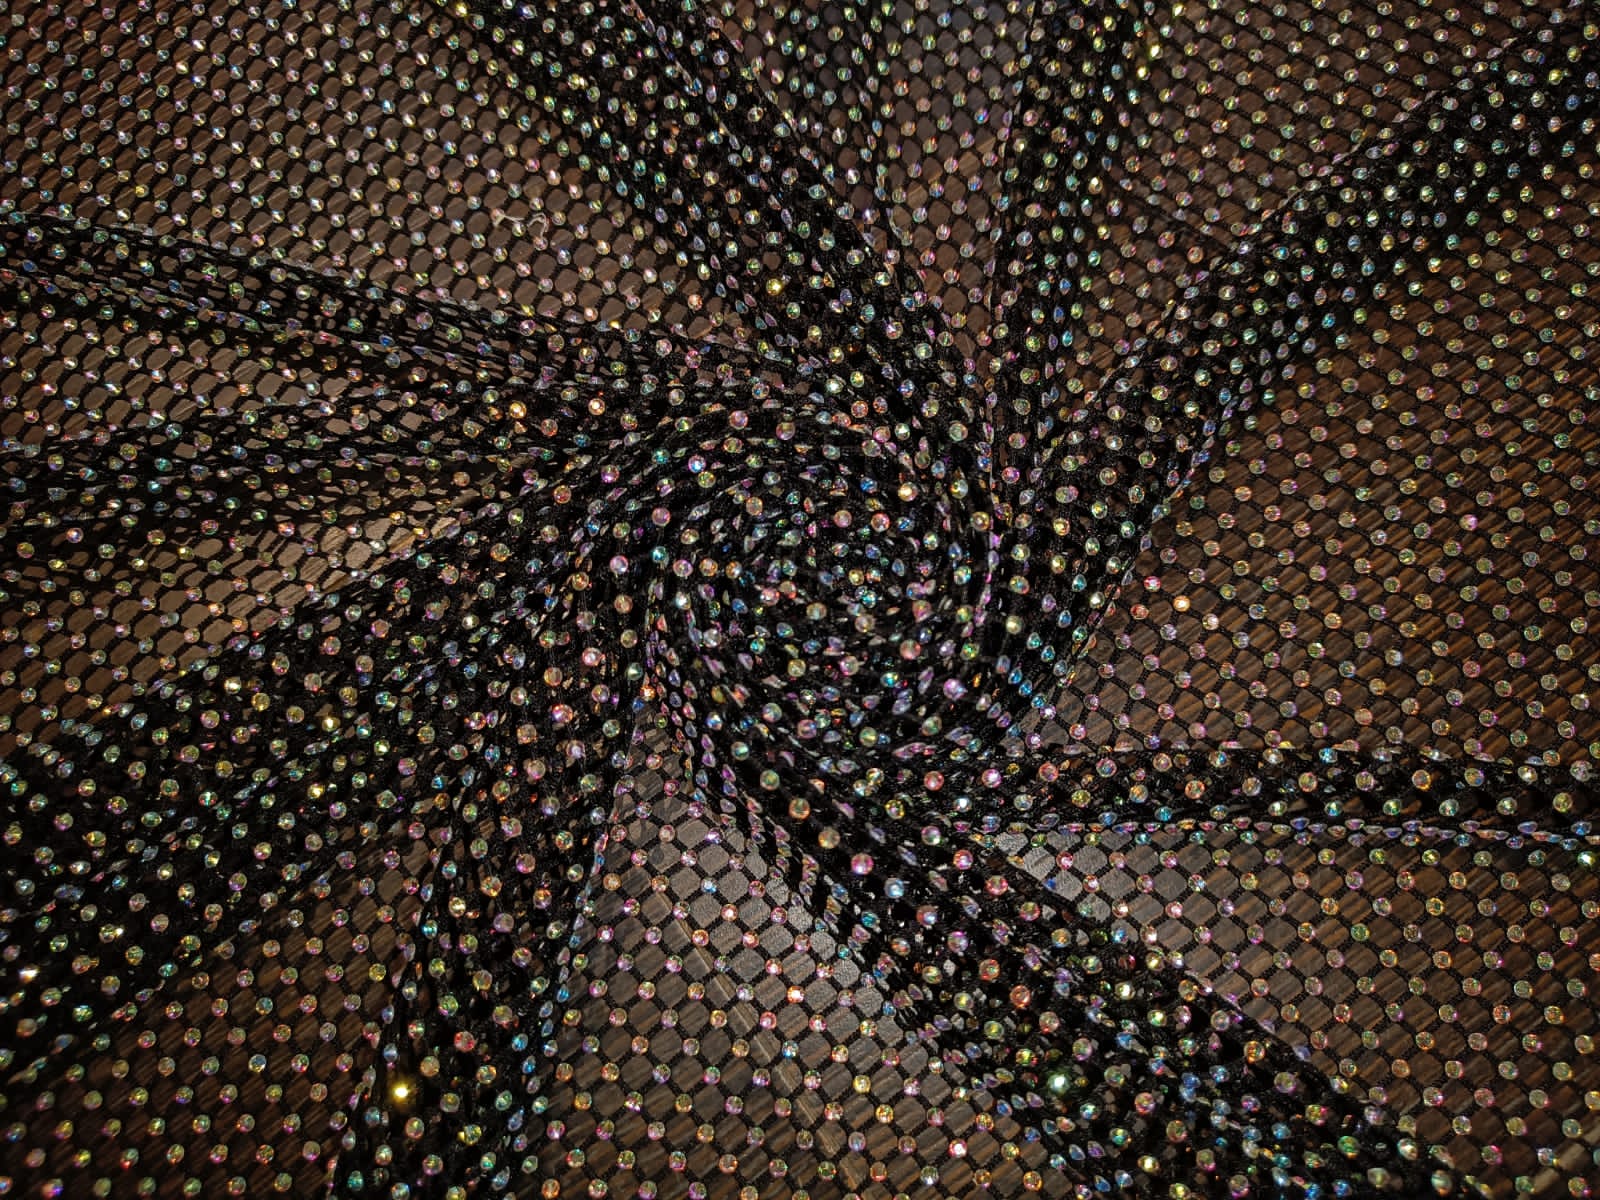 Mesh Rhinestone Fabric Crystal Elastic Net Hollow for Fancy Dress